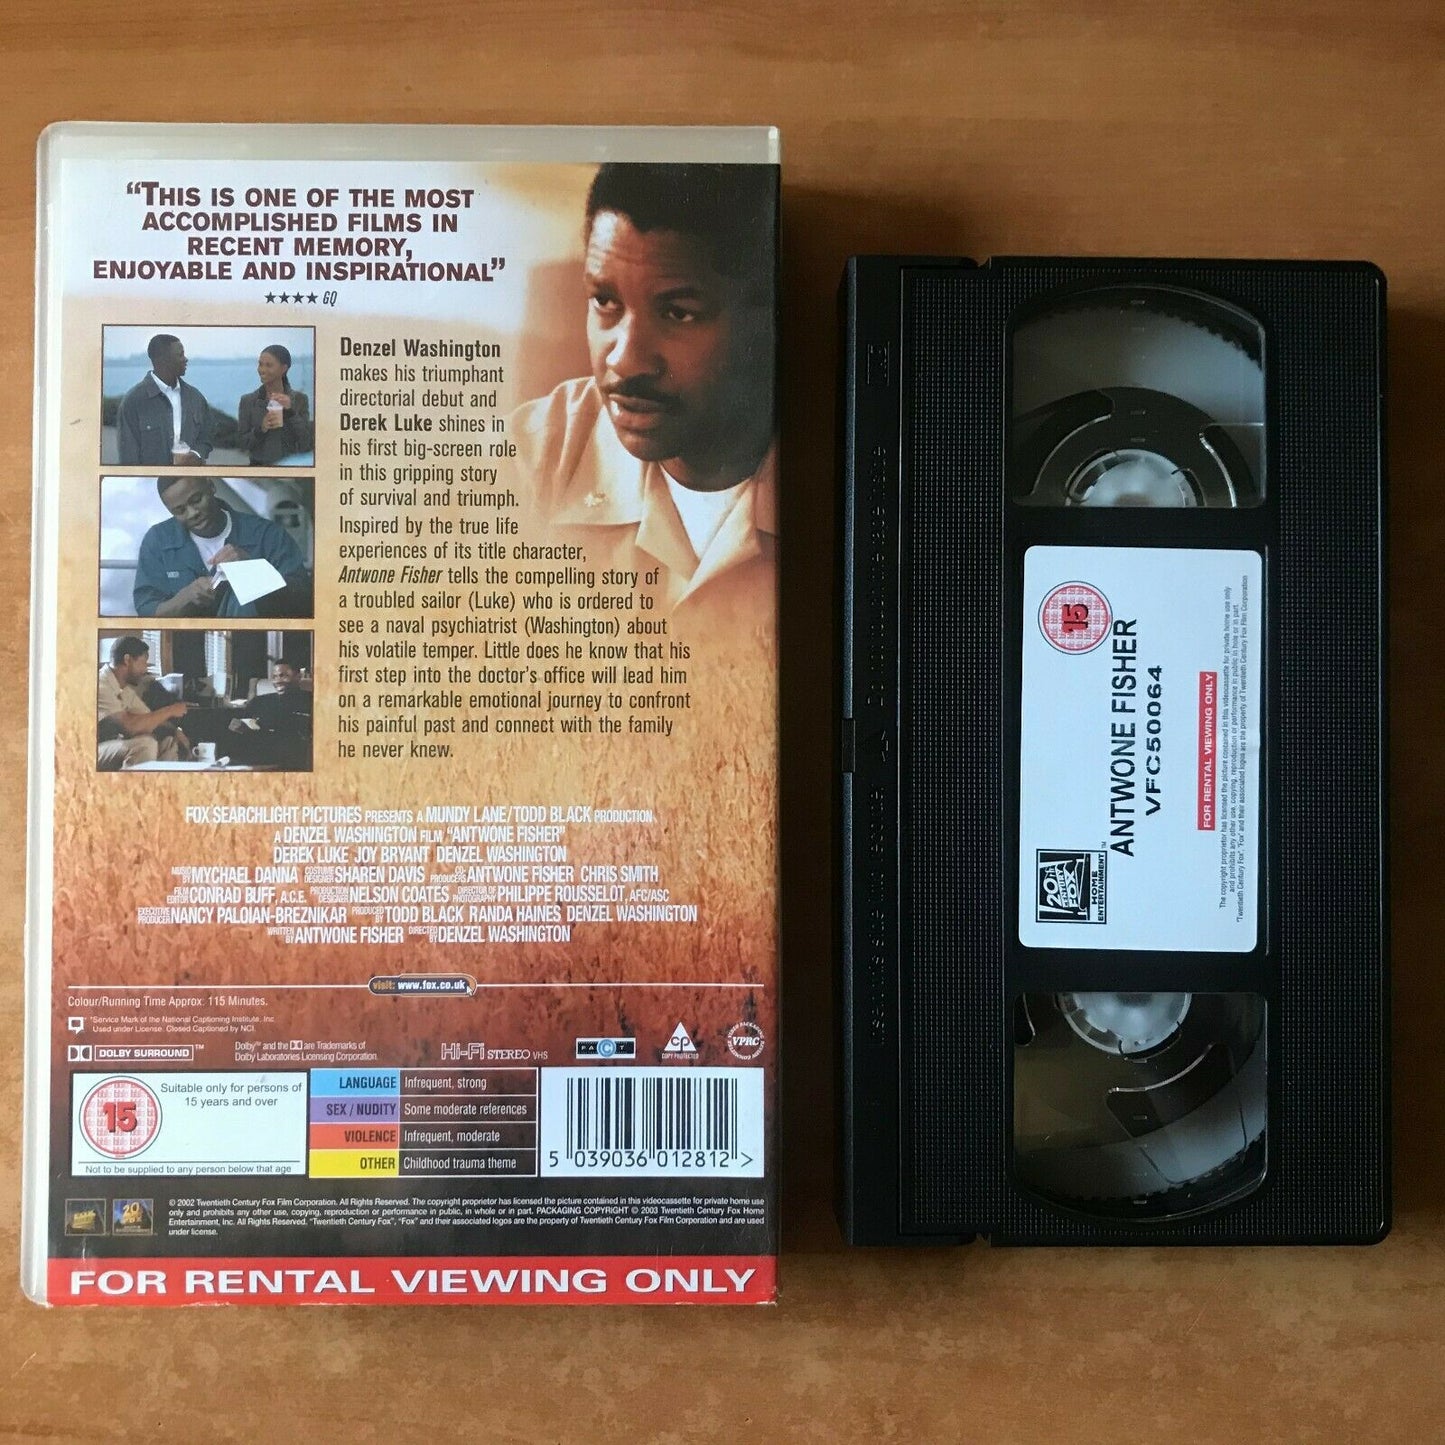 Antwone Fisher (2002): True Story Drama; [Large Box] Denzel Washington - Pal VHS-